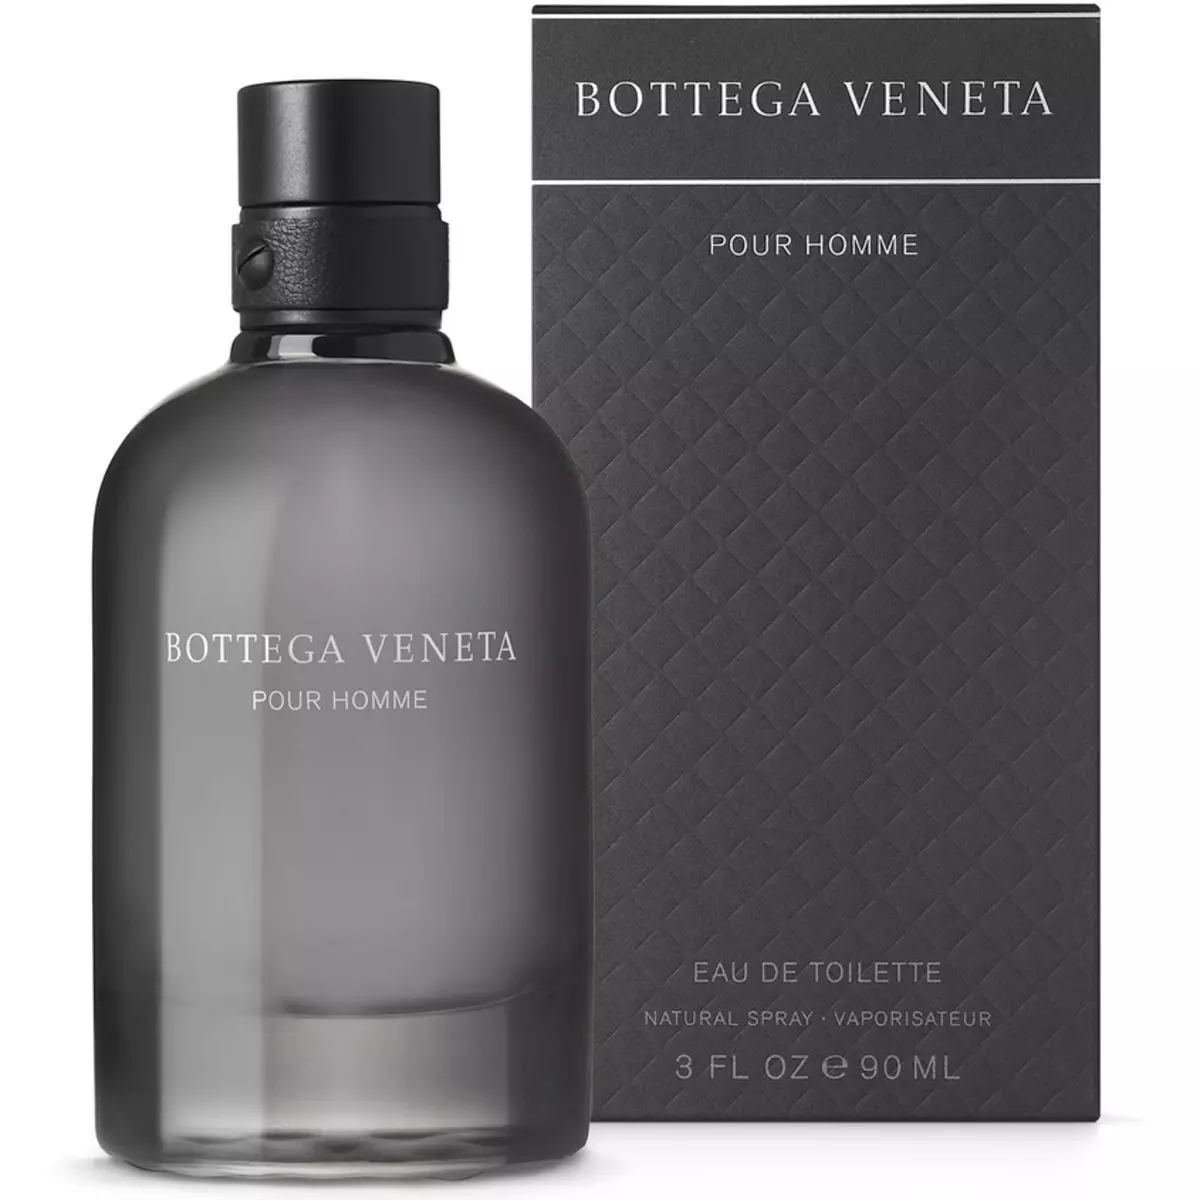 Bottega Veneta parfum: Women en manlju parfum, knoop, yllúzje en oar oanklaaiïrewetter, resinsjes oer geuren 25257_15